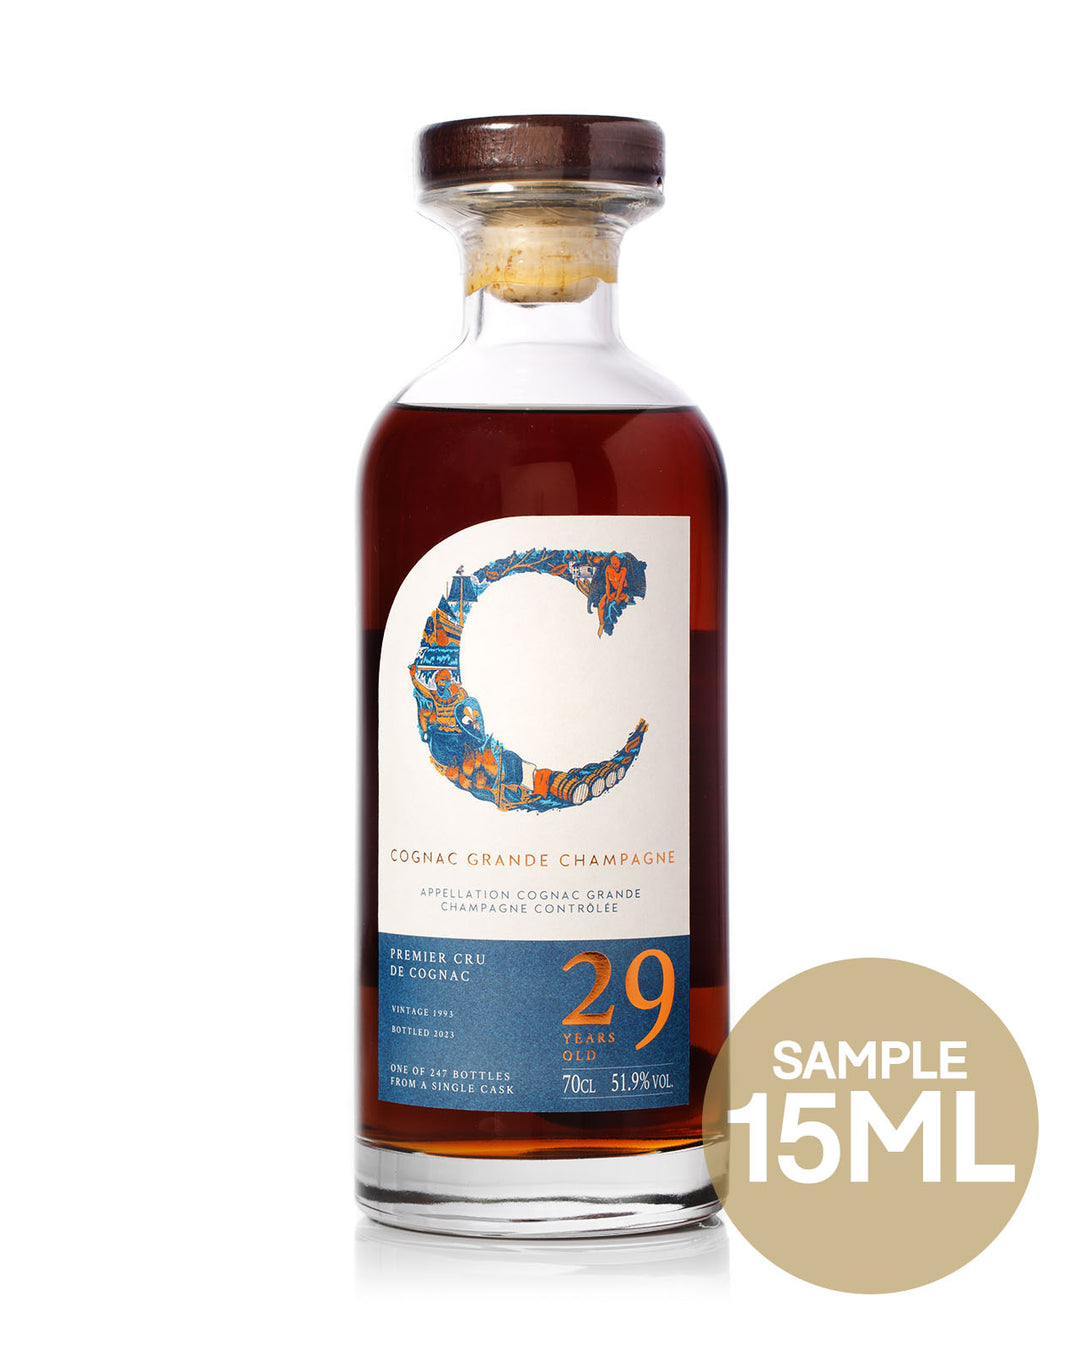 15ml Sample - 29 Year Old Grande Champagne Cognac bottled for Mark Littler Ltd